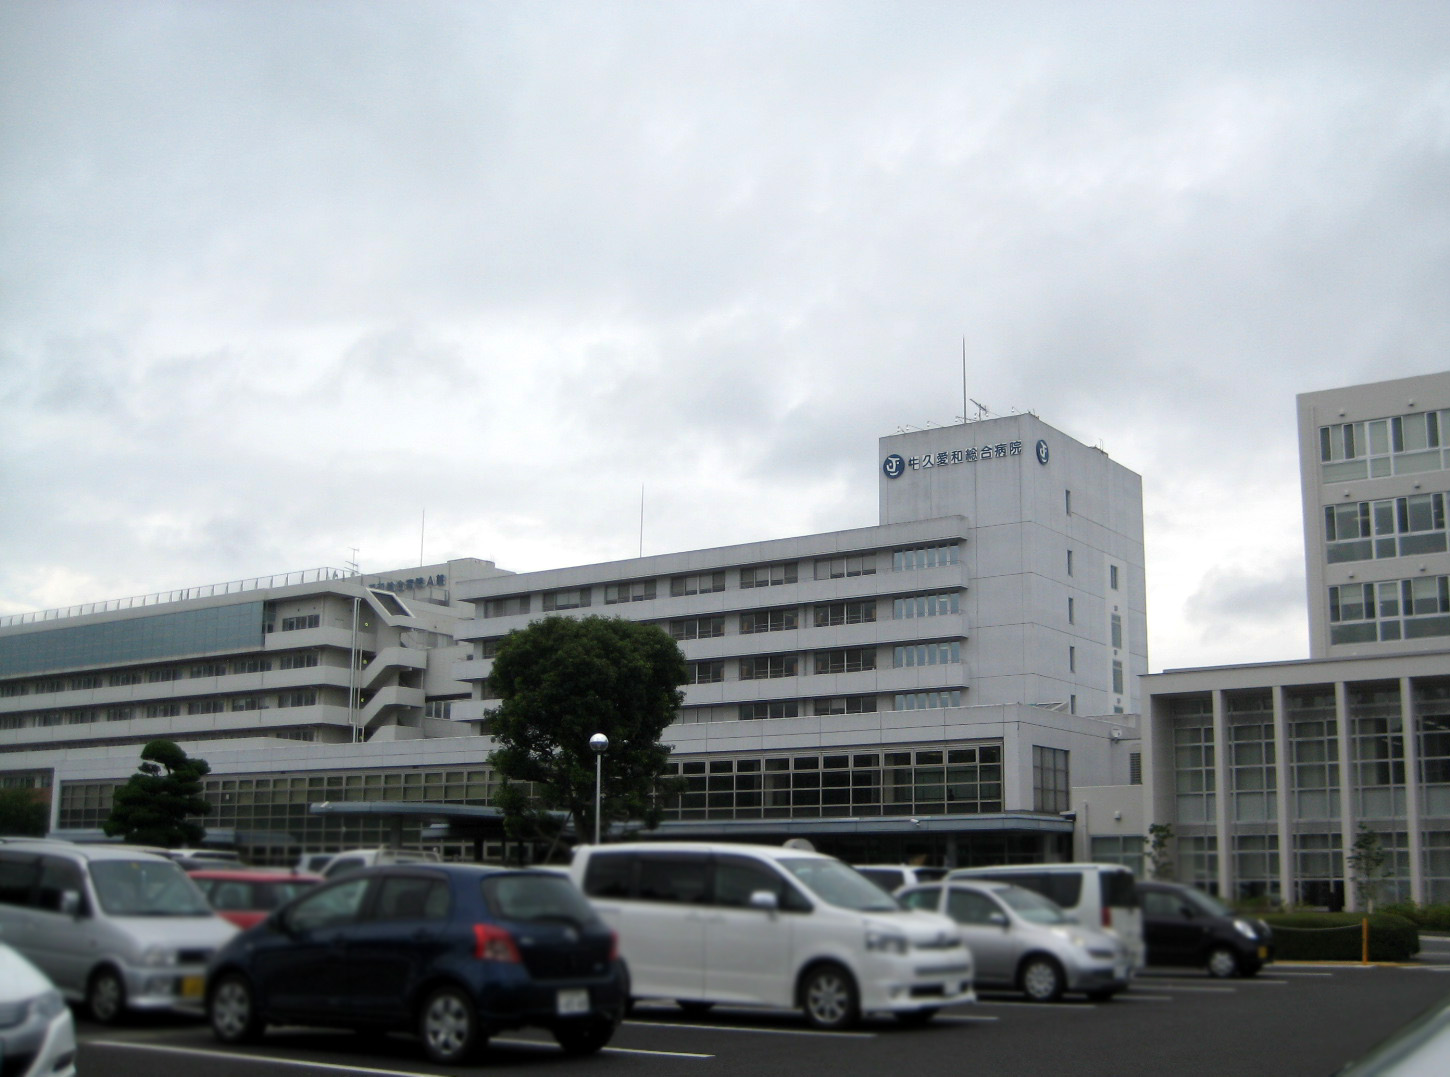 Hospital. Ushikuaiwasogobyoin 800m until the (hospital)